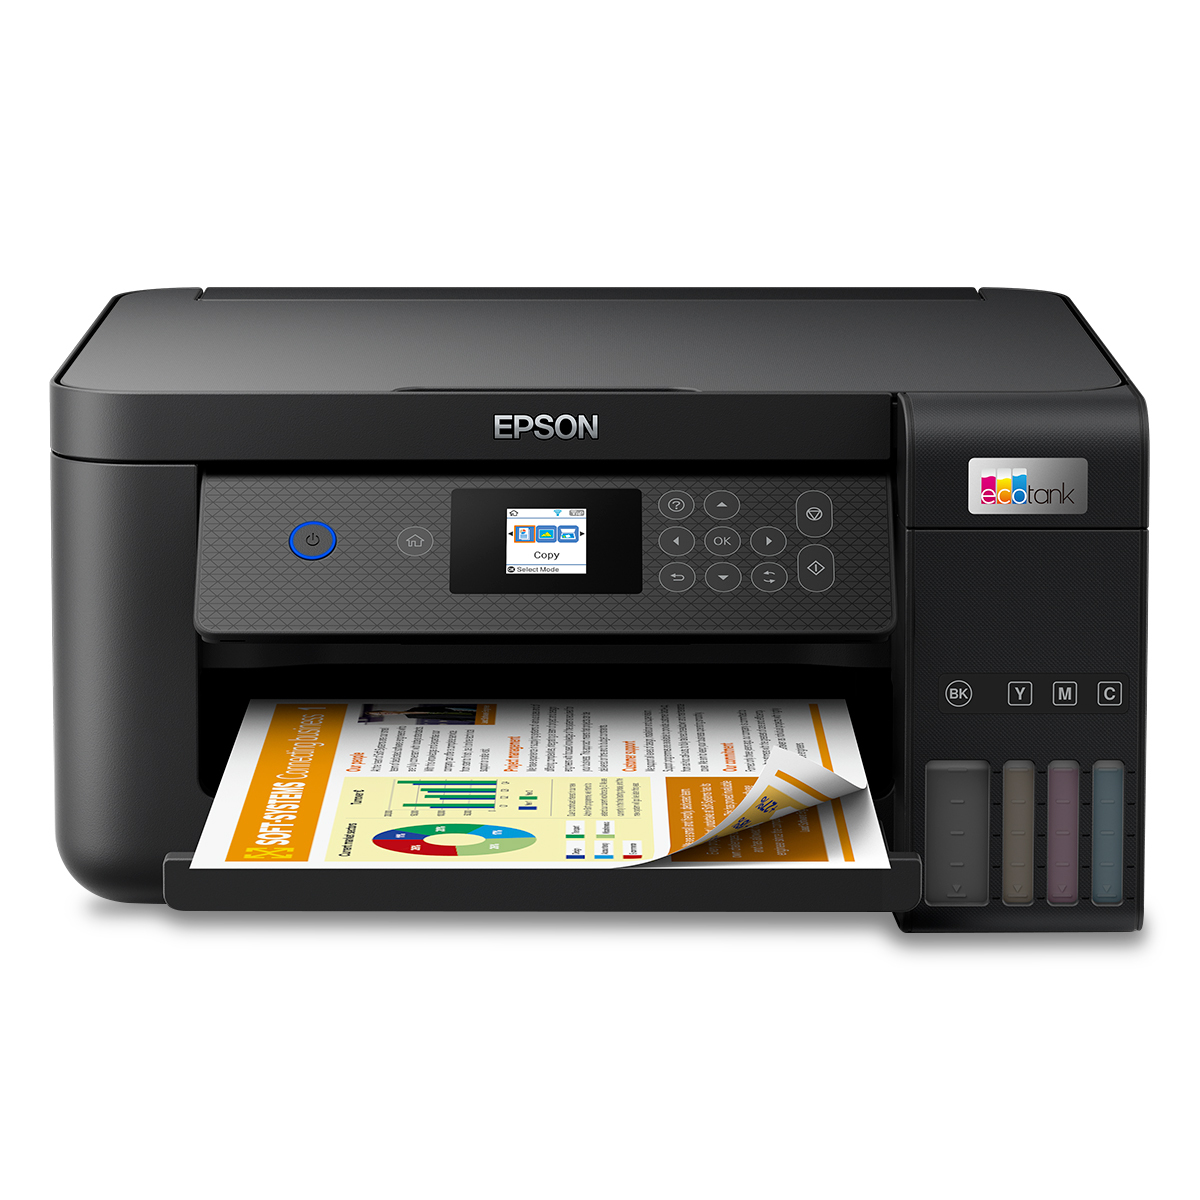 Descubre la mejor impresora multifuncional para el hogar - RYM